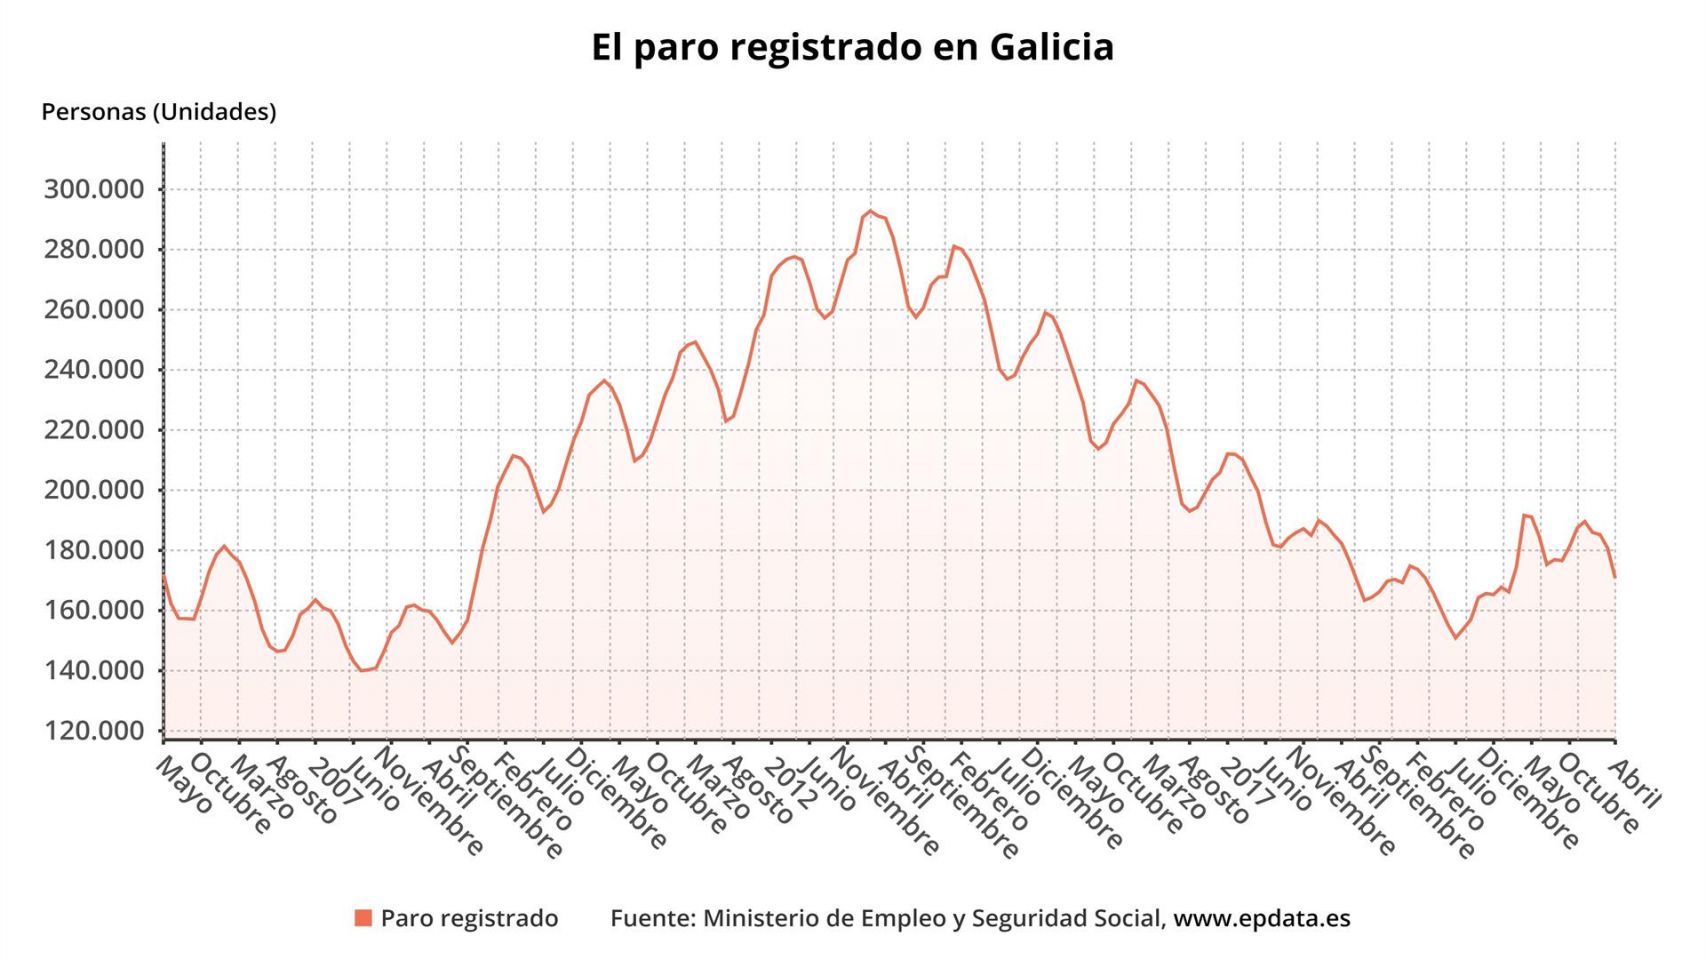 El paro registrado baja en Galicia en abril.